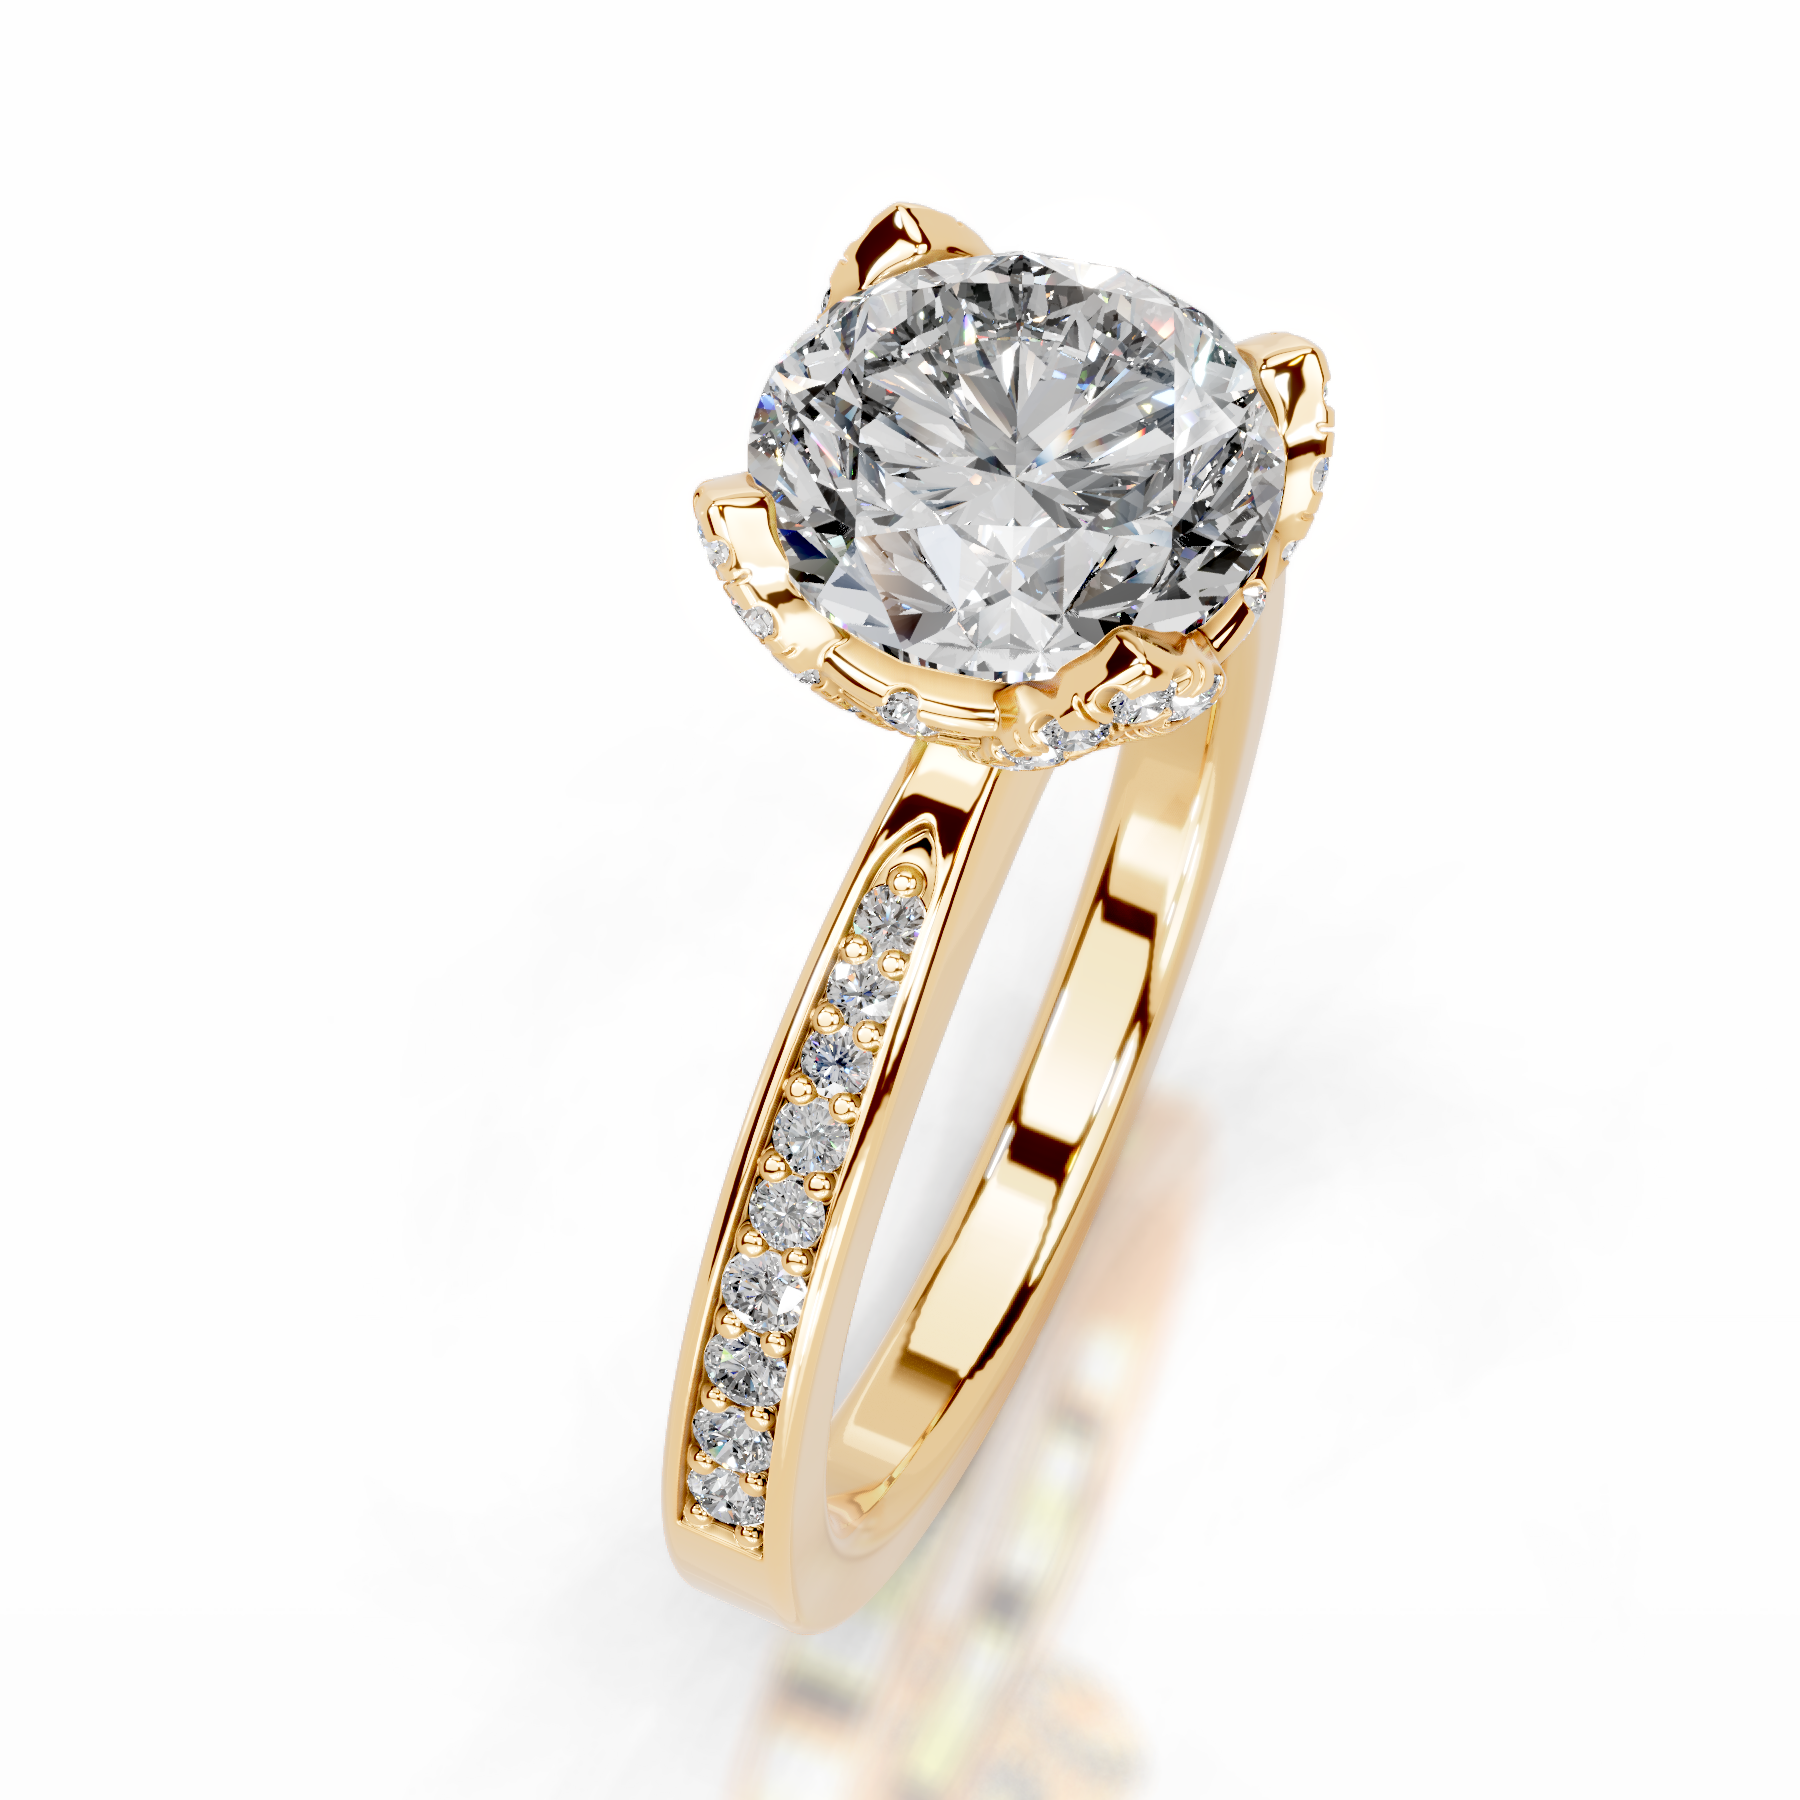 Daria Diamond Engagement Ring   (1.85 Carat) -18K Yellow Gold